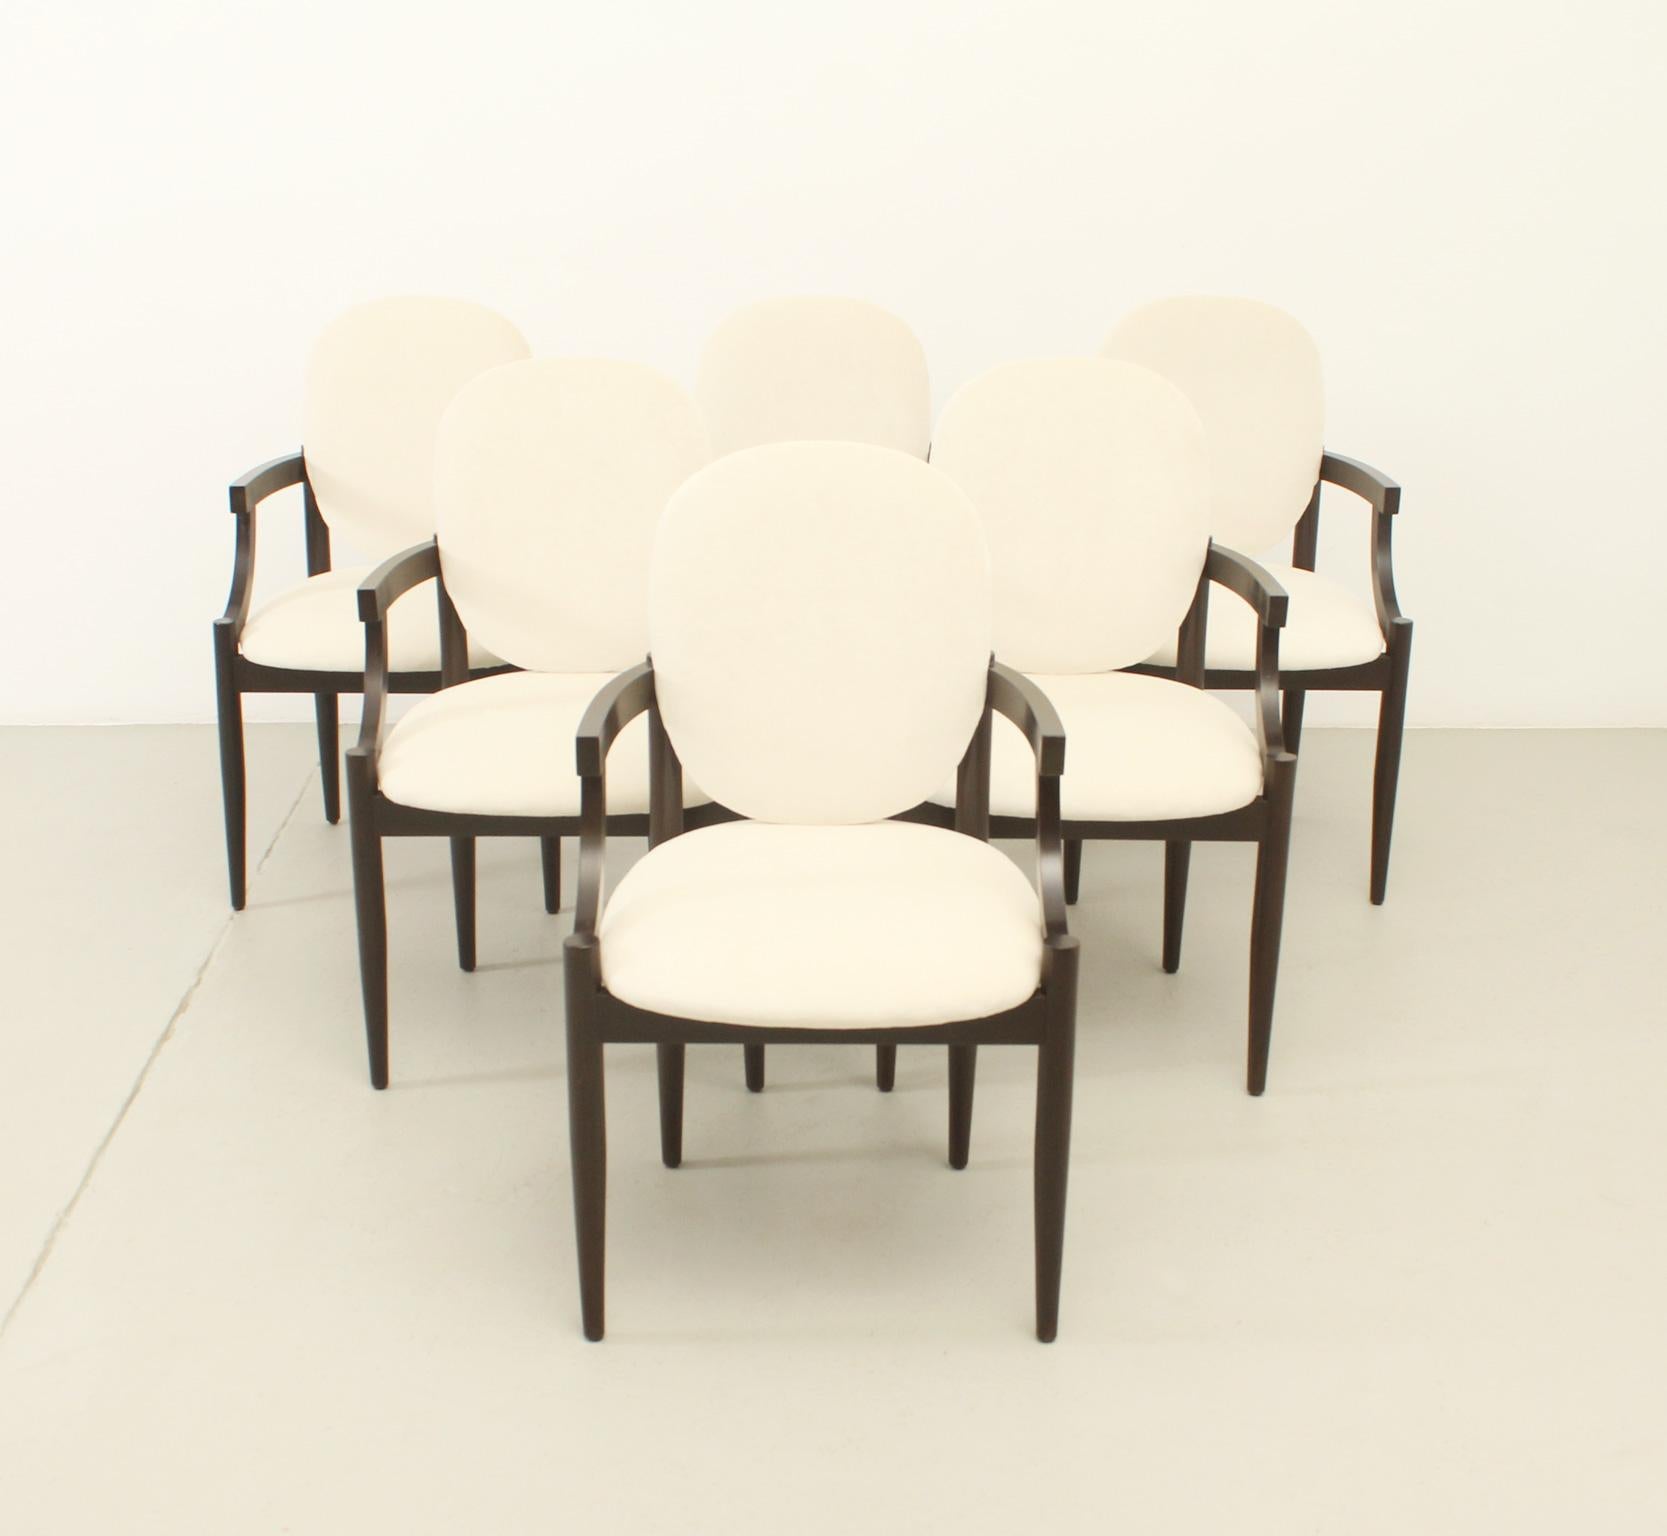 Satz von sechs Reno-Stühlen, 1961 von den spanischen Architekten Federico Correa und Alfonso Milá für das Restaurant Reno in Barcelona entworfen und von Gres hergestellt. Struktur aus Ukola-Holz mit Messingdetails und neue Polsterung mit